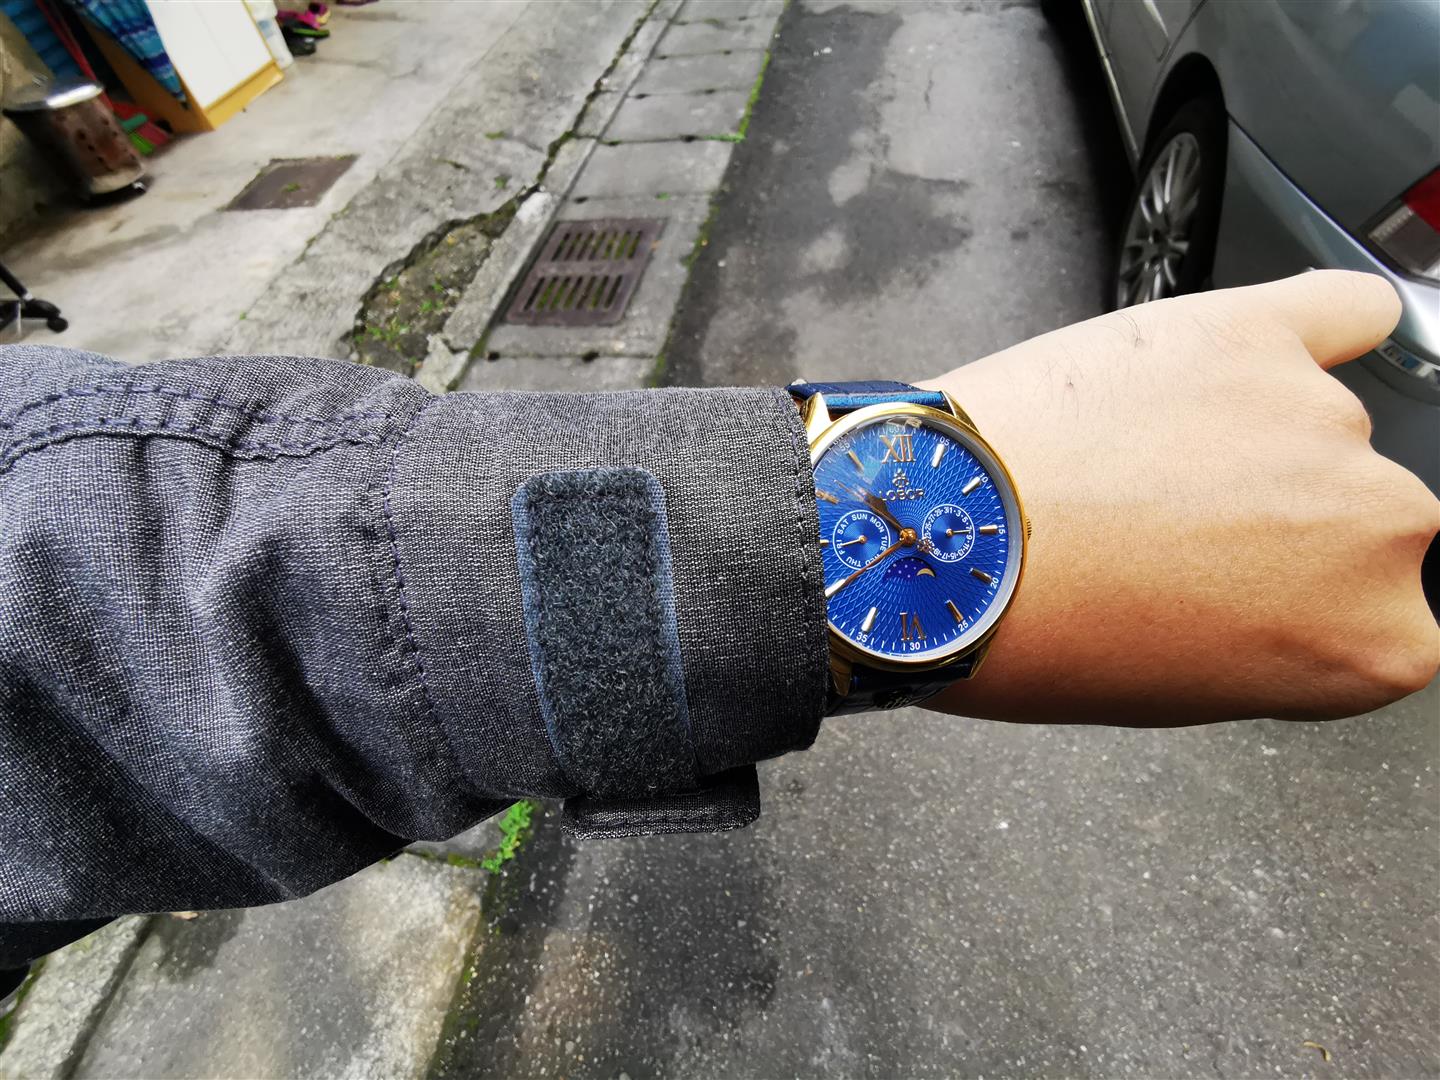 LOBOR 腕表 - 當你更在意時間的價值，配戴的不只是腕錶，而是一種自律態度